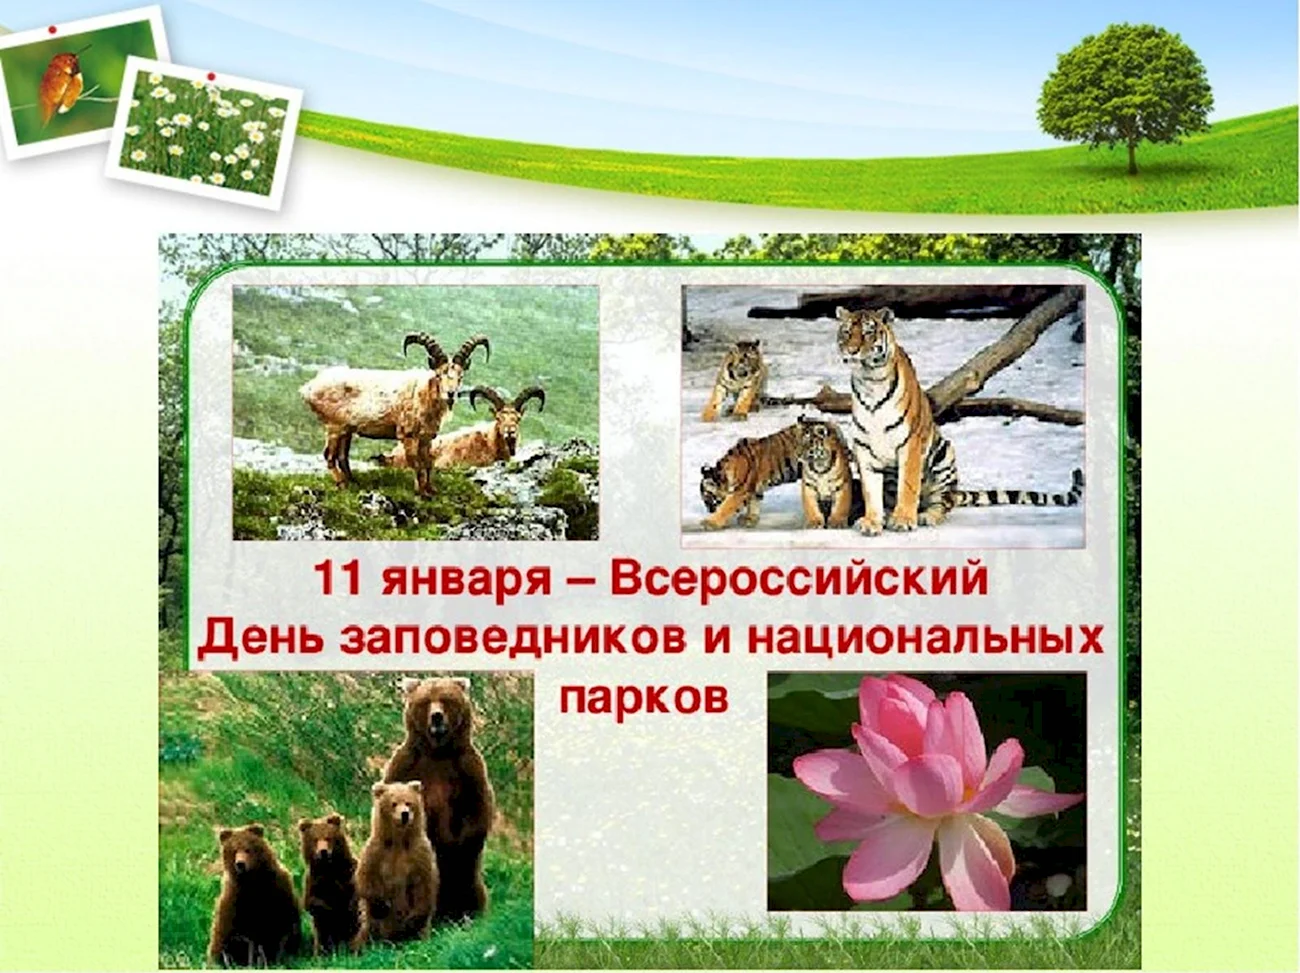 11 Января Всероссийский день заповедников и национальных парков. Красивая картинка